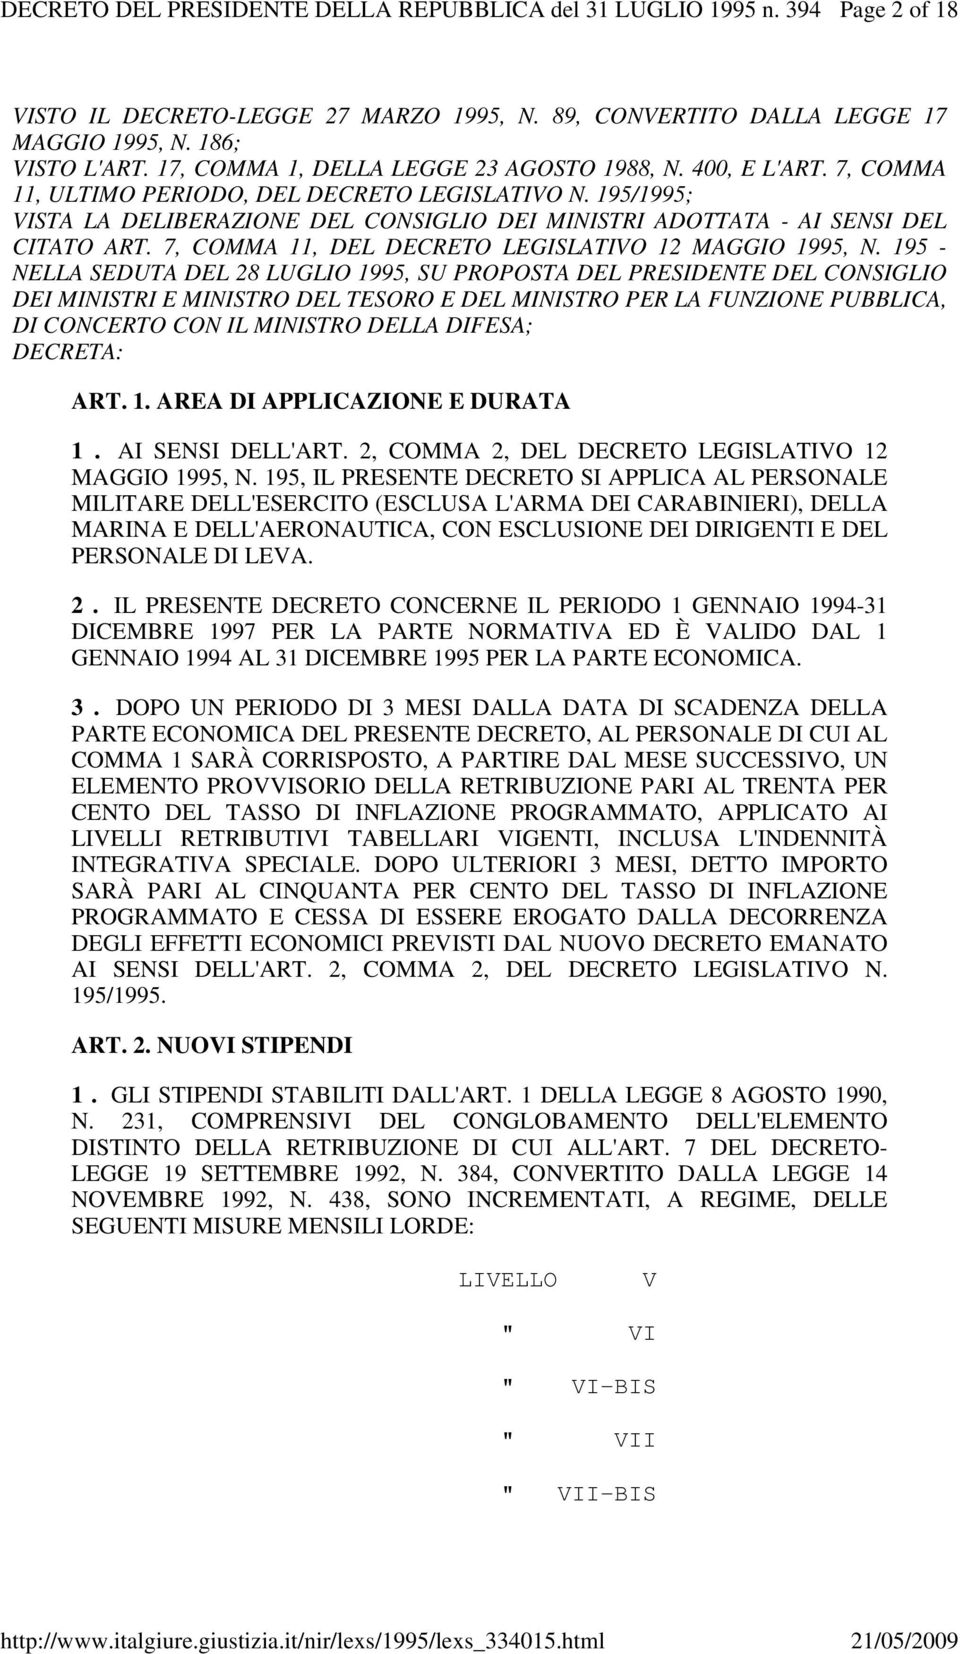 195/1995; VISTA LA DELIBERAZIONE DEL CONSIGLIO DEI MINISTRI ADOTTATA - AI SENSI DEL CITATO ART. 7, COMMA 11, DEL DECRETO LEGISLATIVO 12 MAGGIO 1995, N.